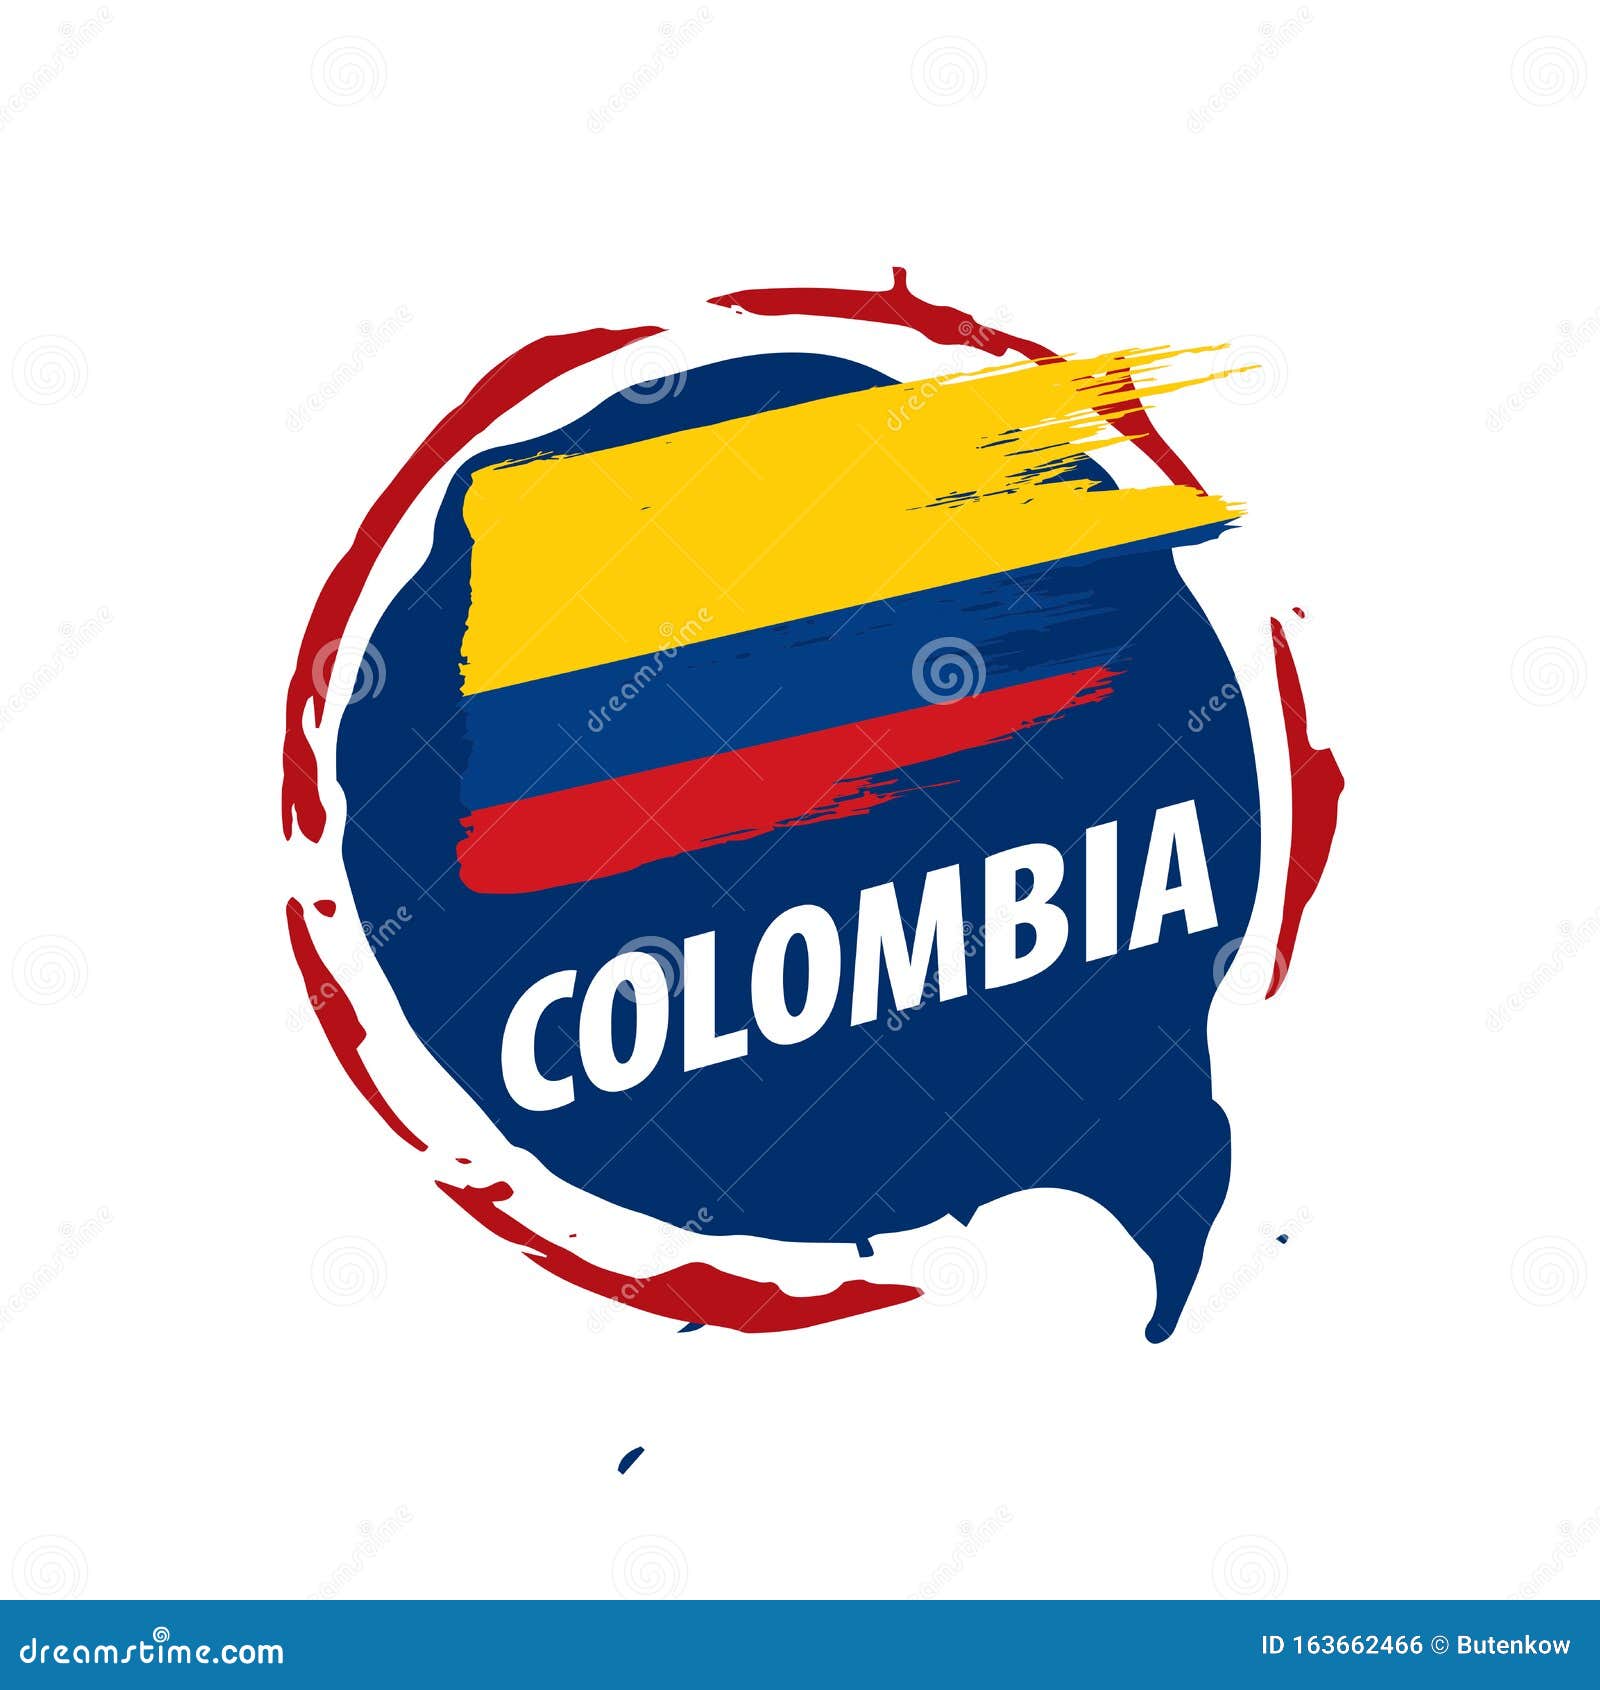 哥伦比亚国旗. 精确的尺寸元素比例和颜色 向量例证. 插画 包括有 图形式, 目的地, 标志, 国籍, 正确地 - 216595137